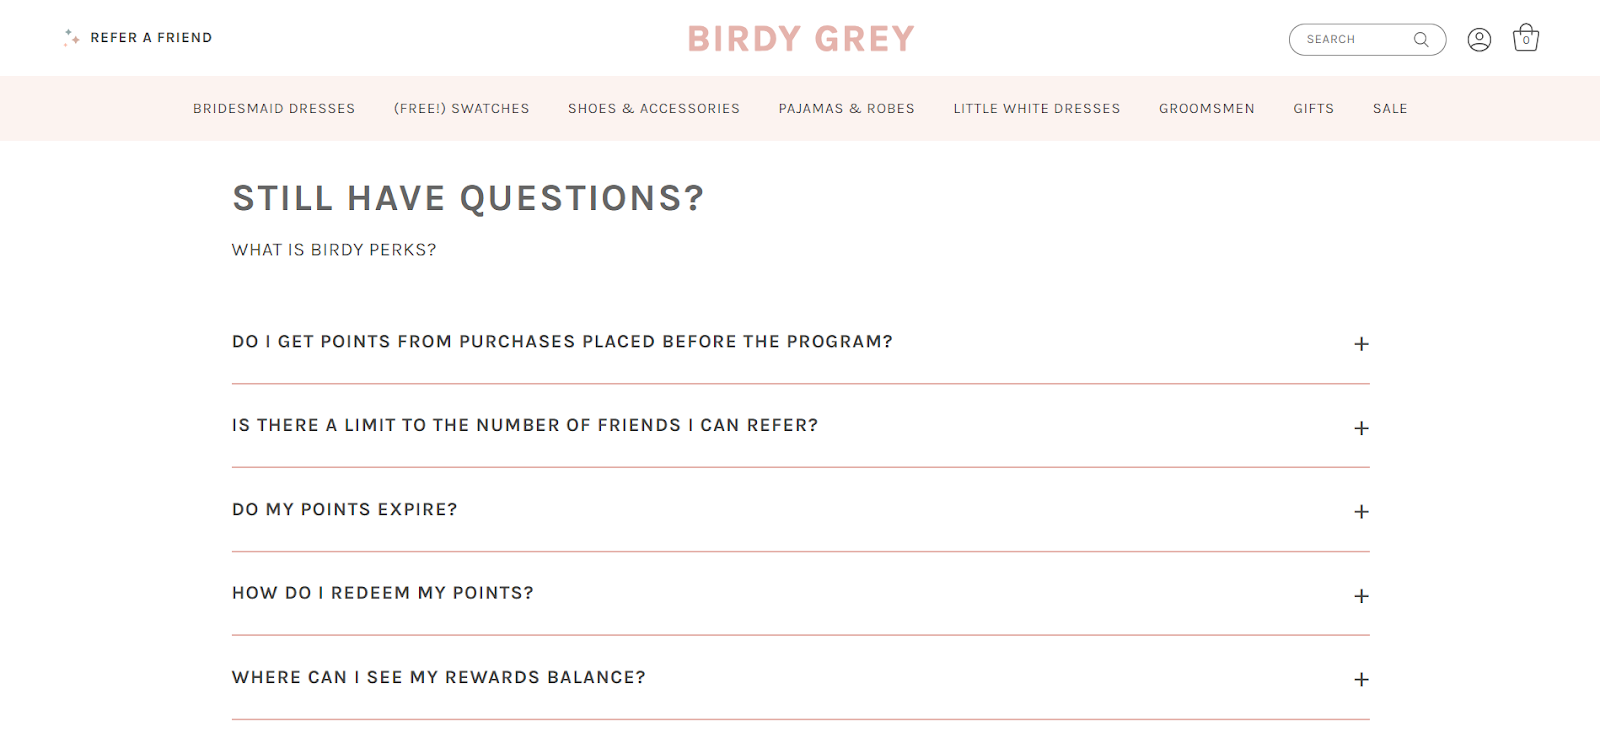 birdy grey loyalty program faq